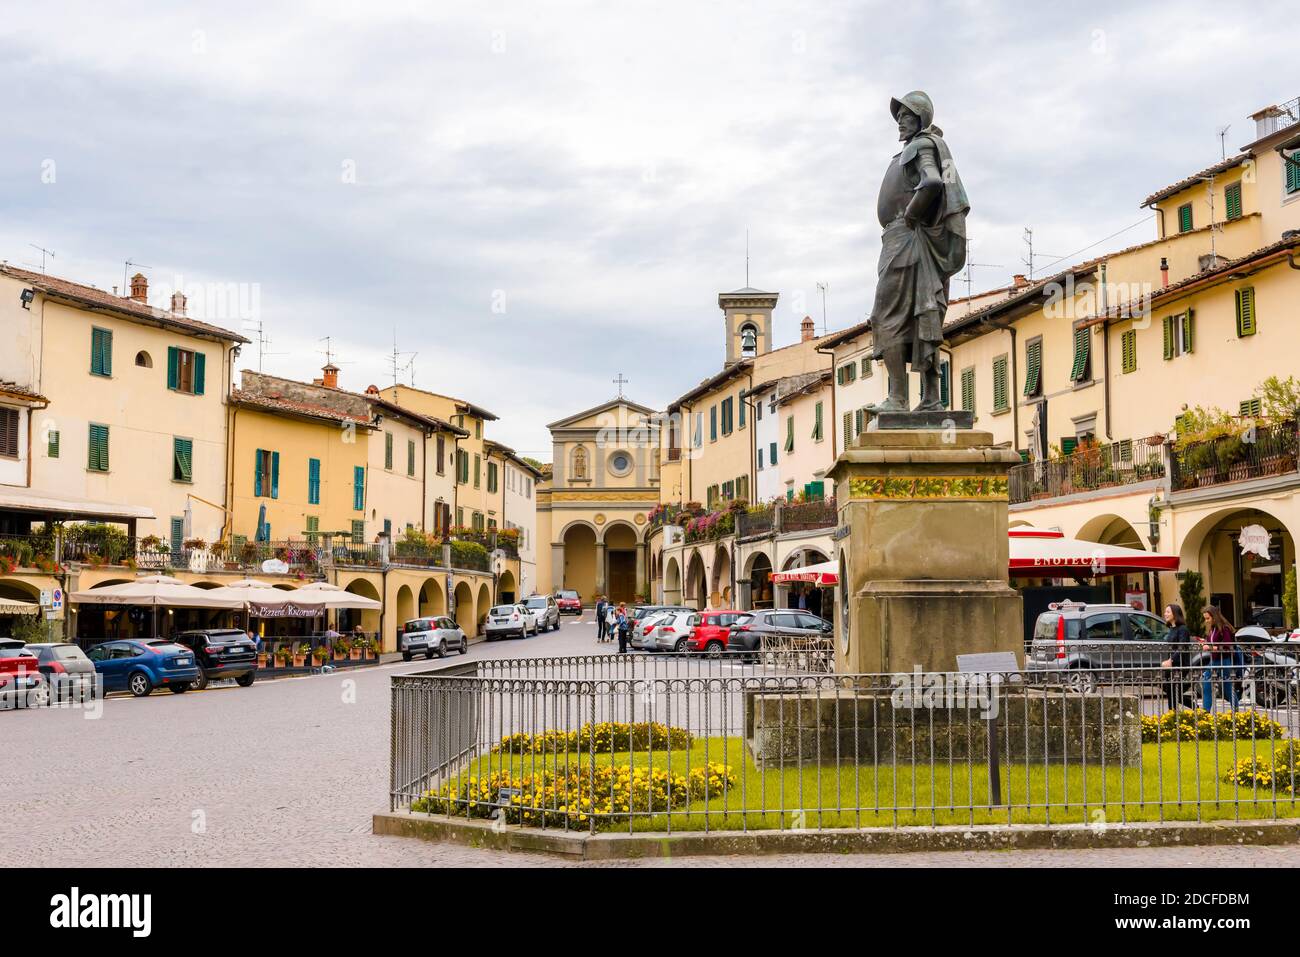 GREVE IN CHIANTI - 11 OTTOBRE 2018: Vista sulla piazza principale con la statua di Giovanni da Verrazzano a Greve in Chianti, Toscana, Italia Foto Stock